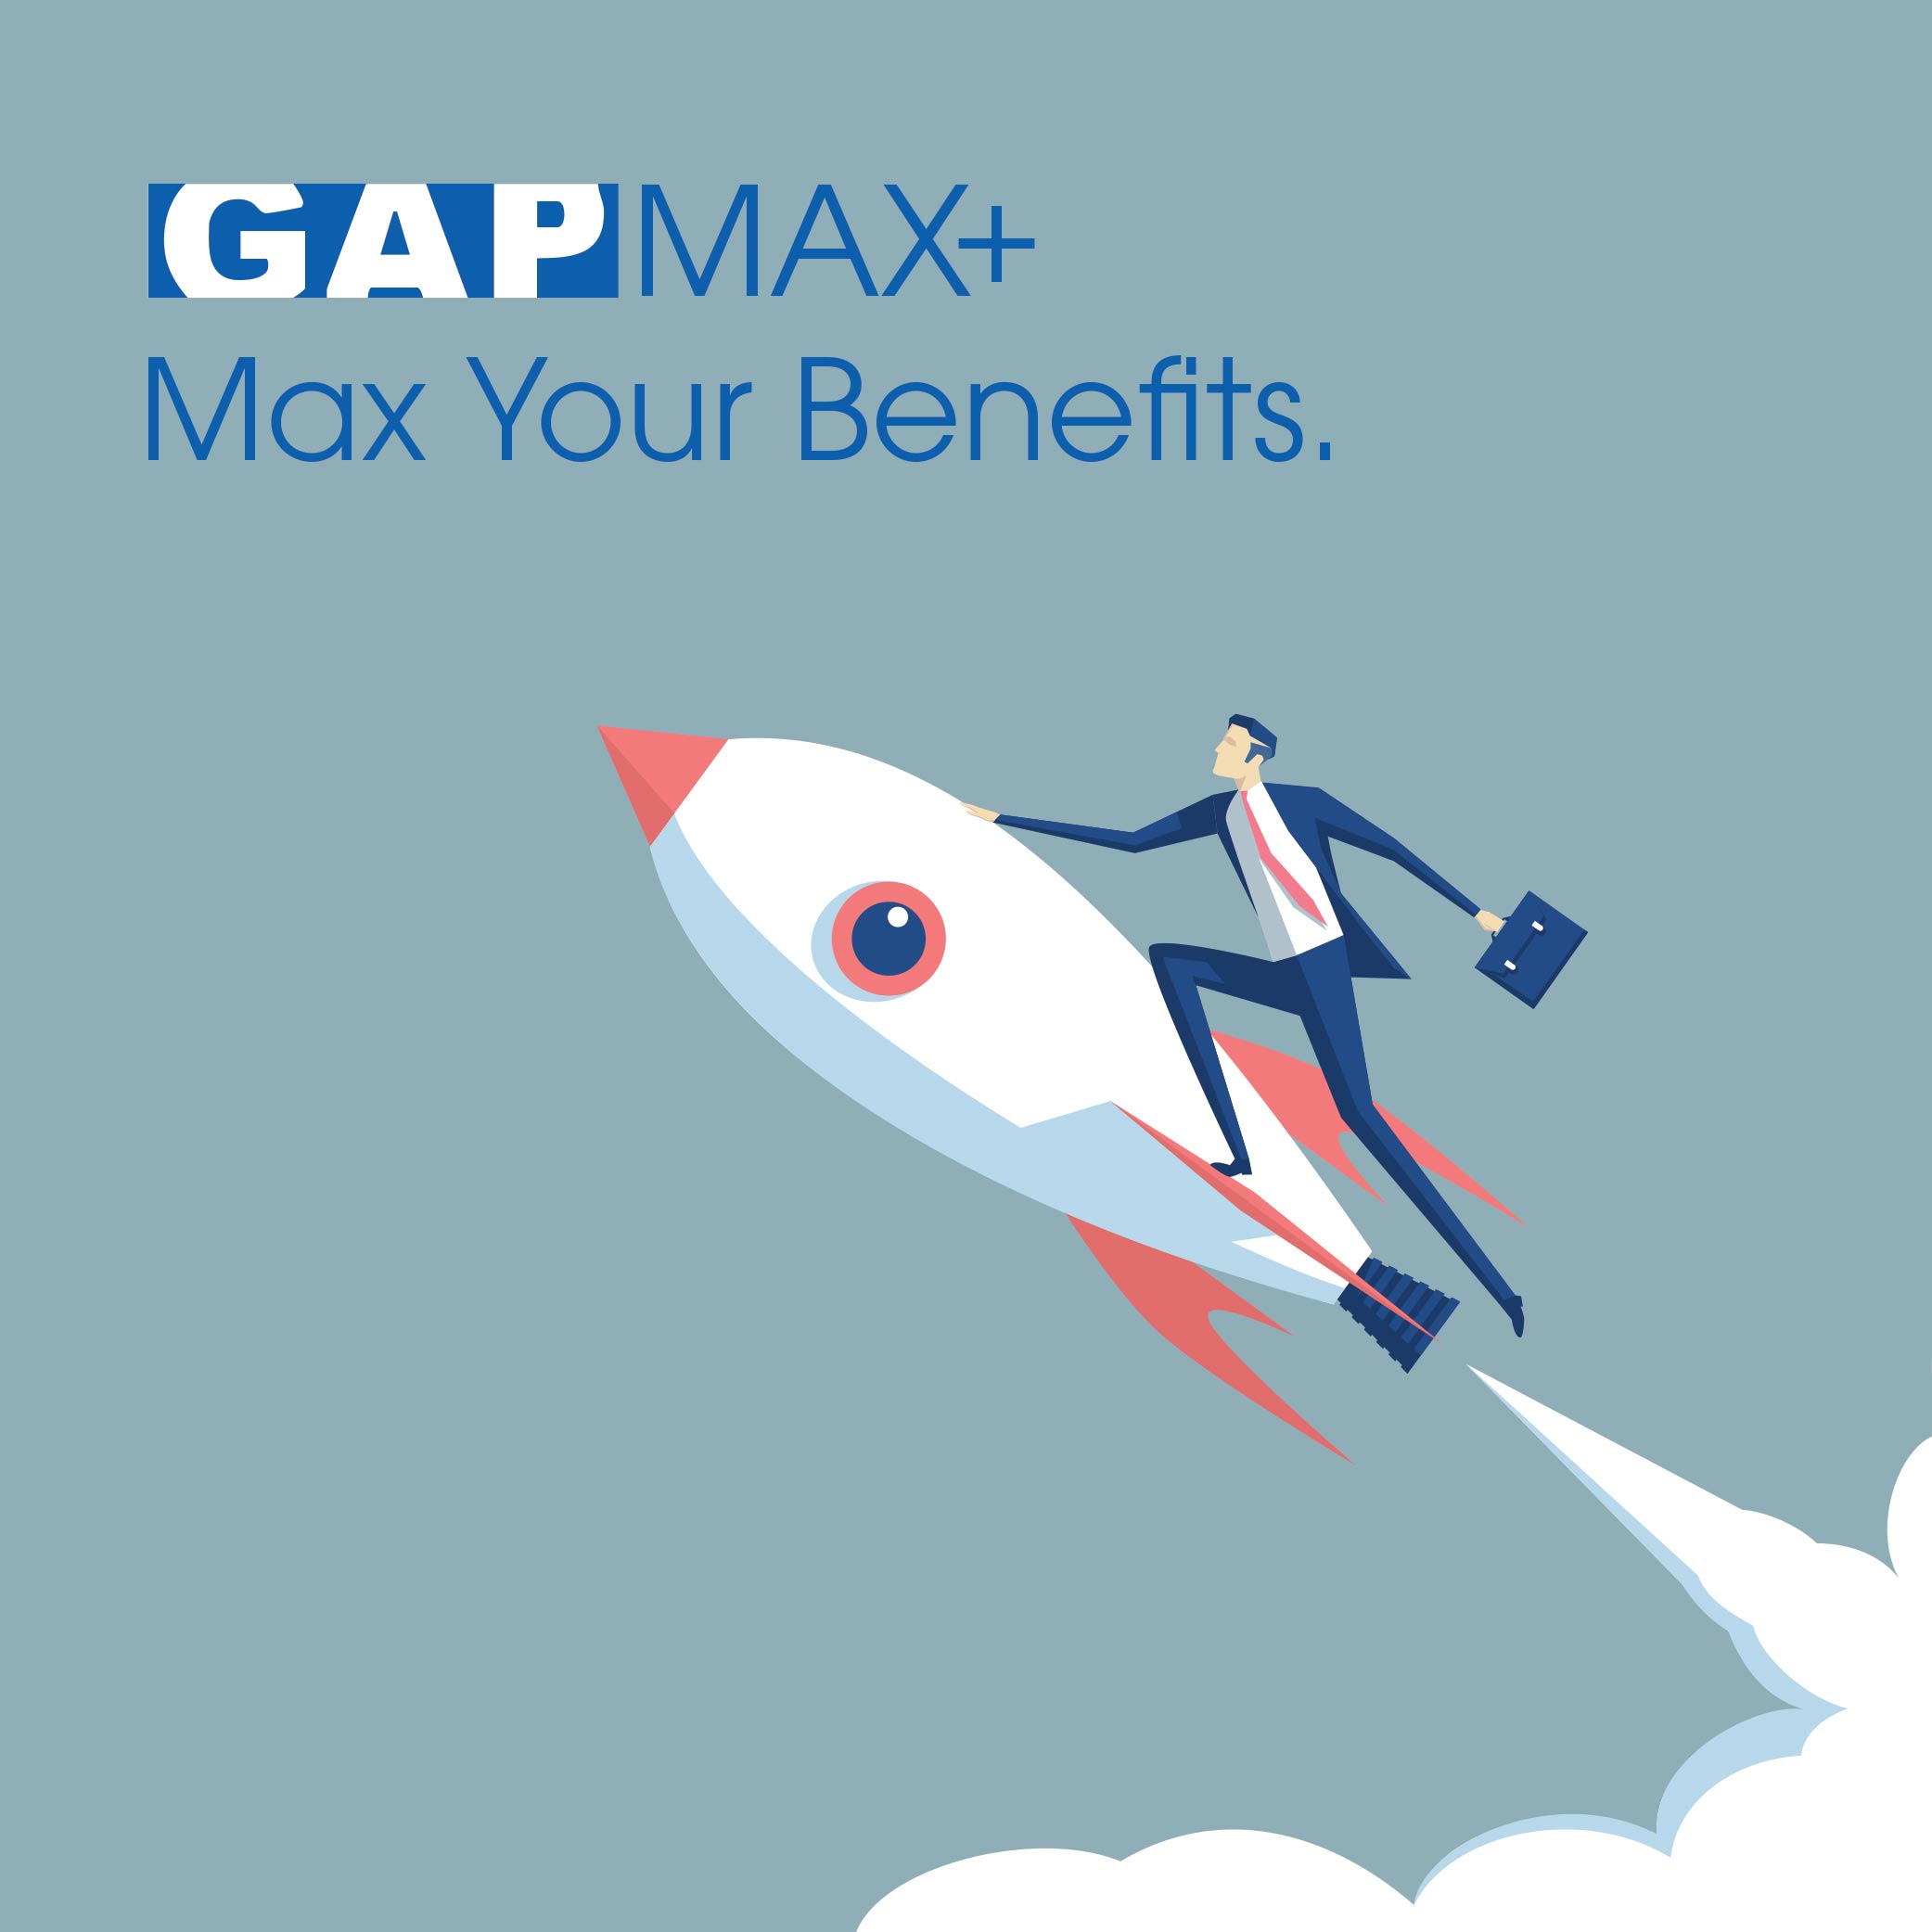 Gap Max+ Plan